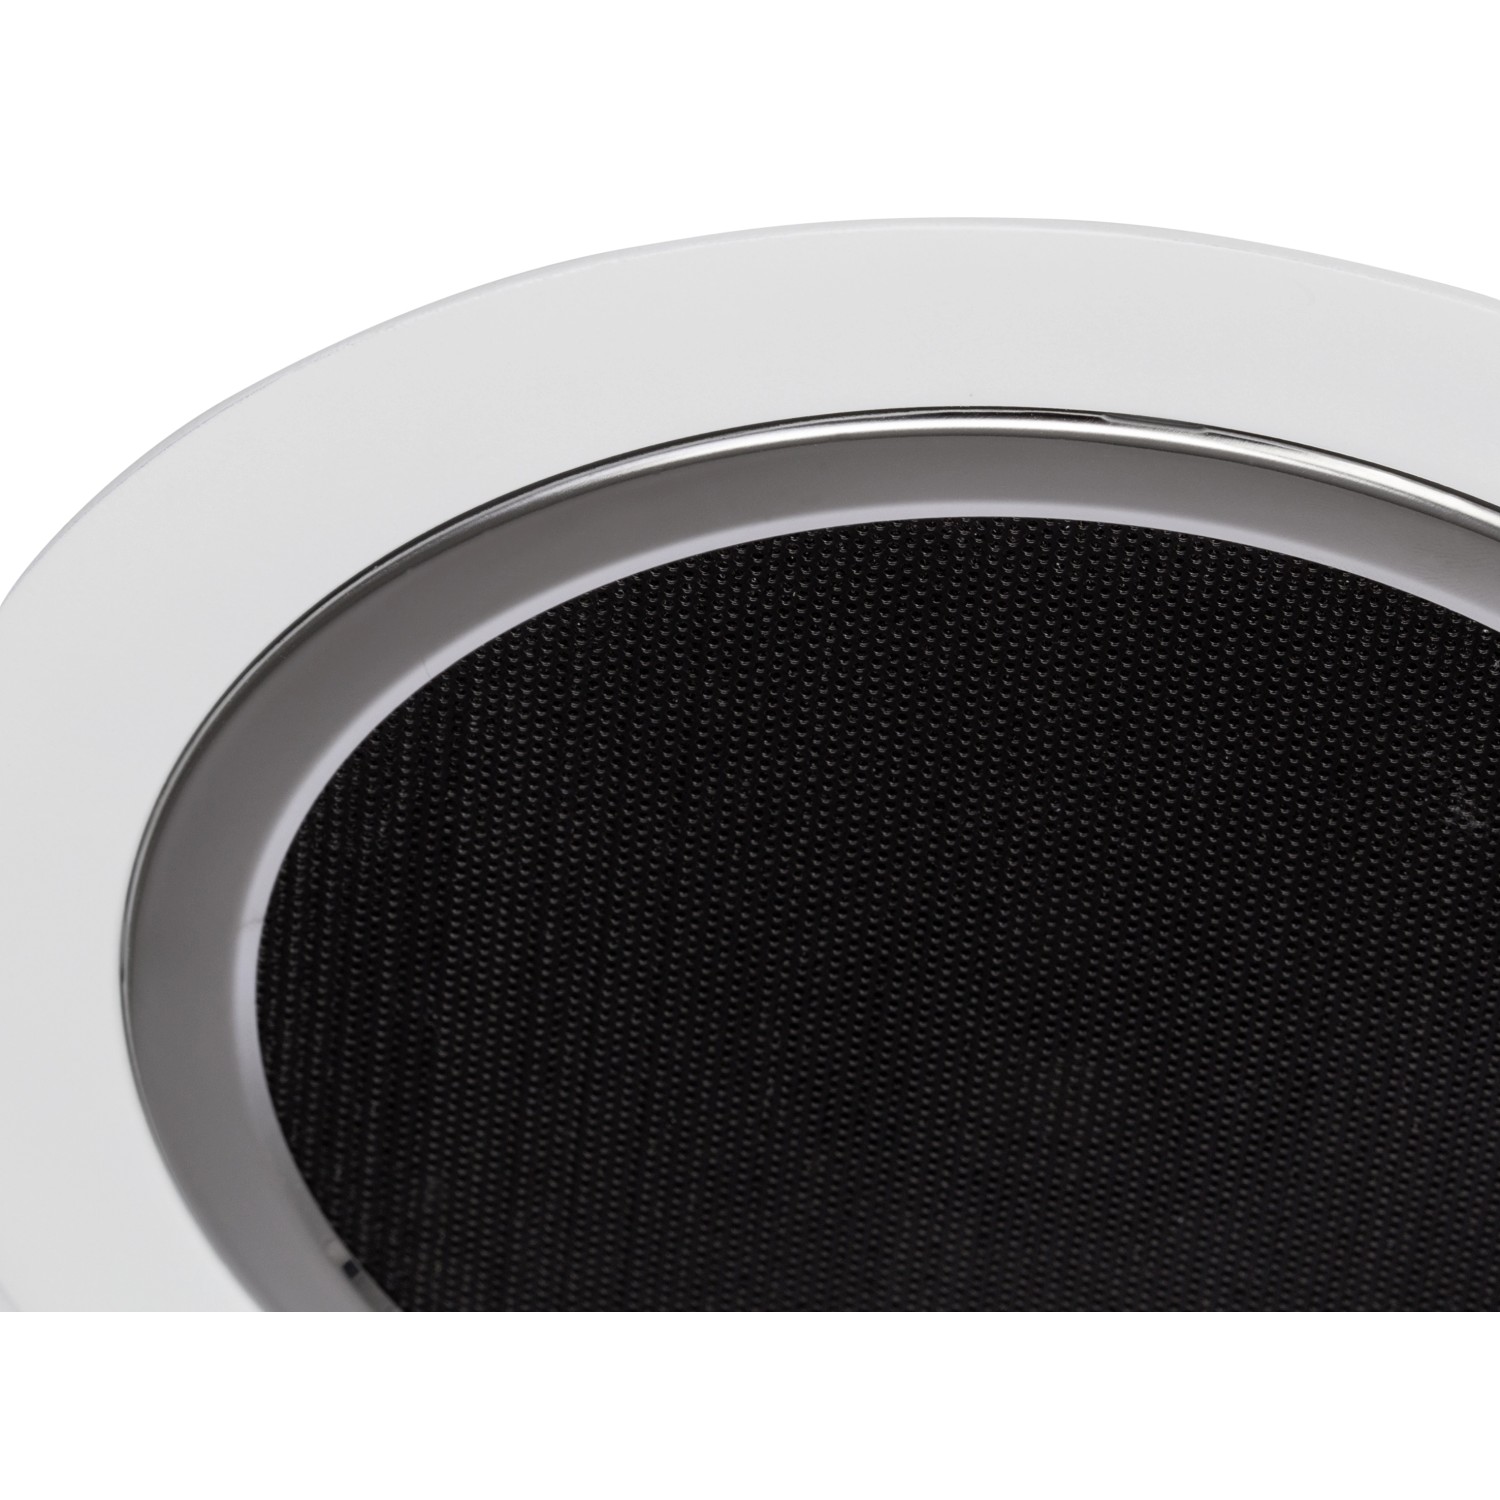 AEG LED-Deckenleuchte Tonic mit Lautsprecher kaufen bei OBI